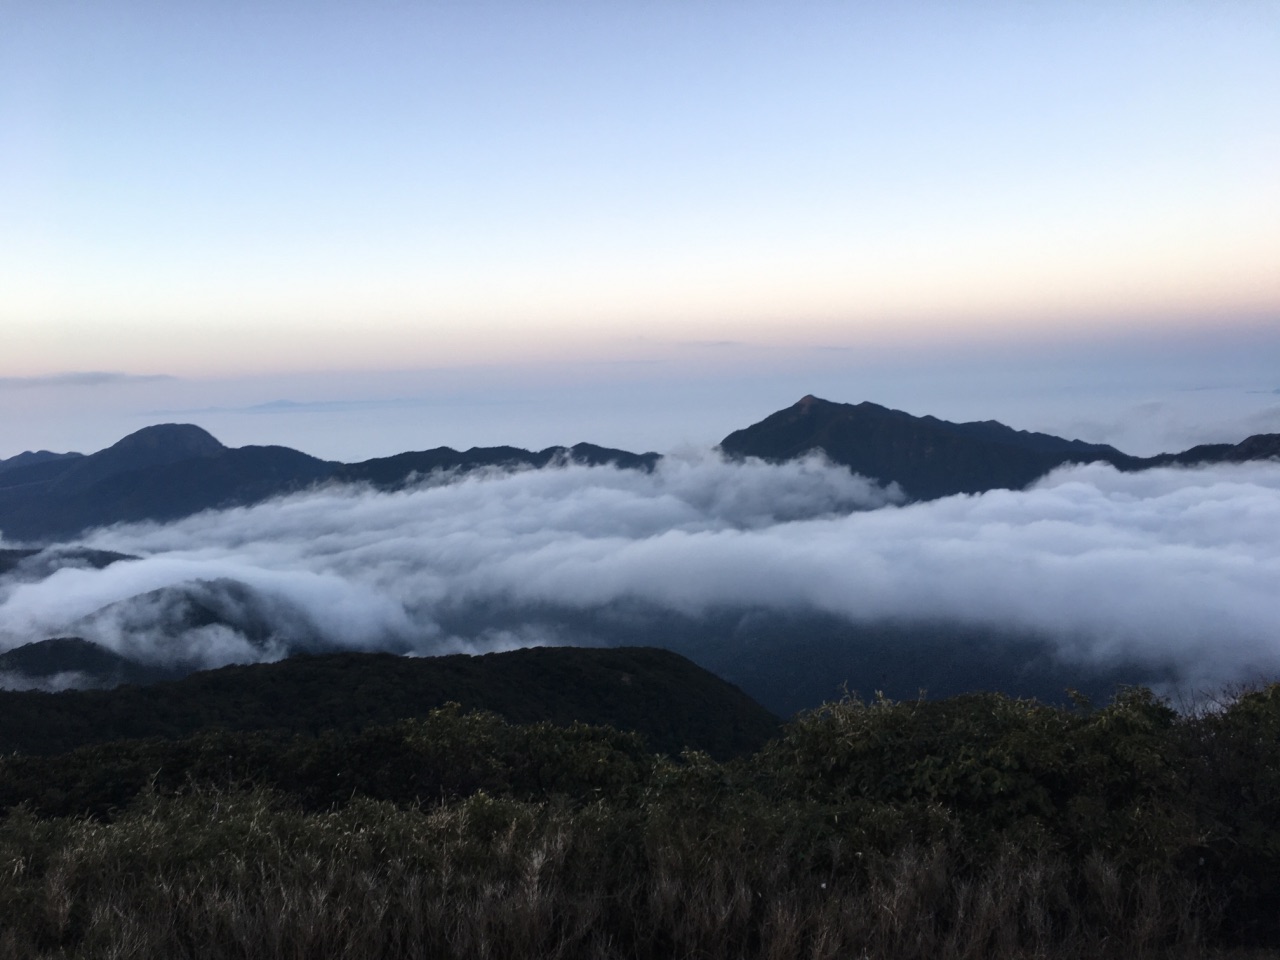 【携程攻略】阳山广东第一峰景点,山顶的云海奇观让人